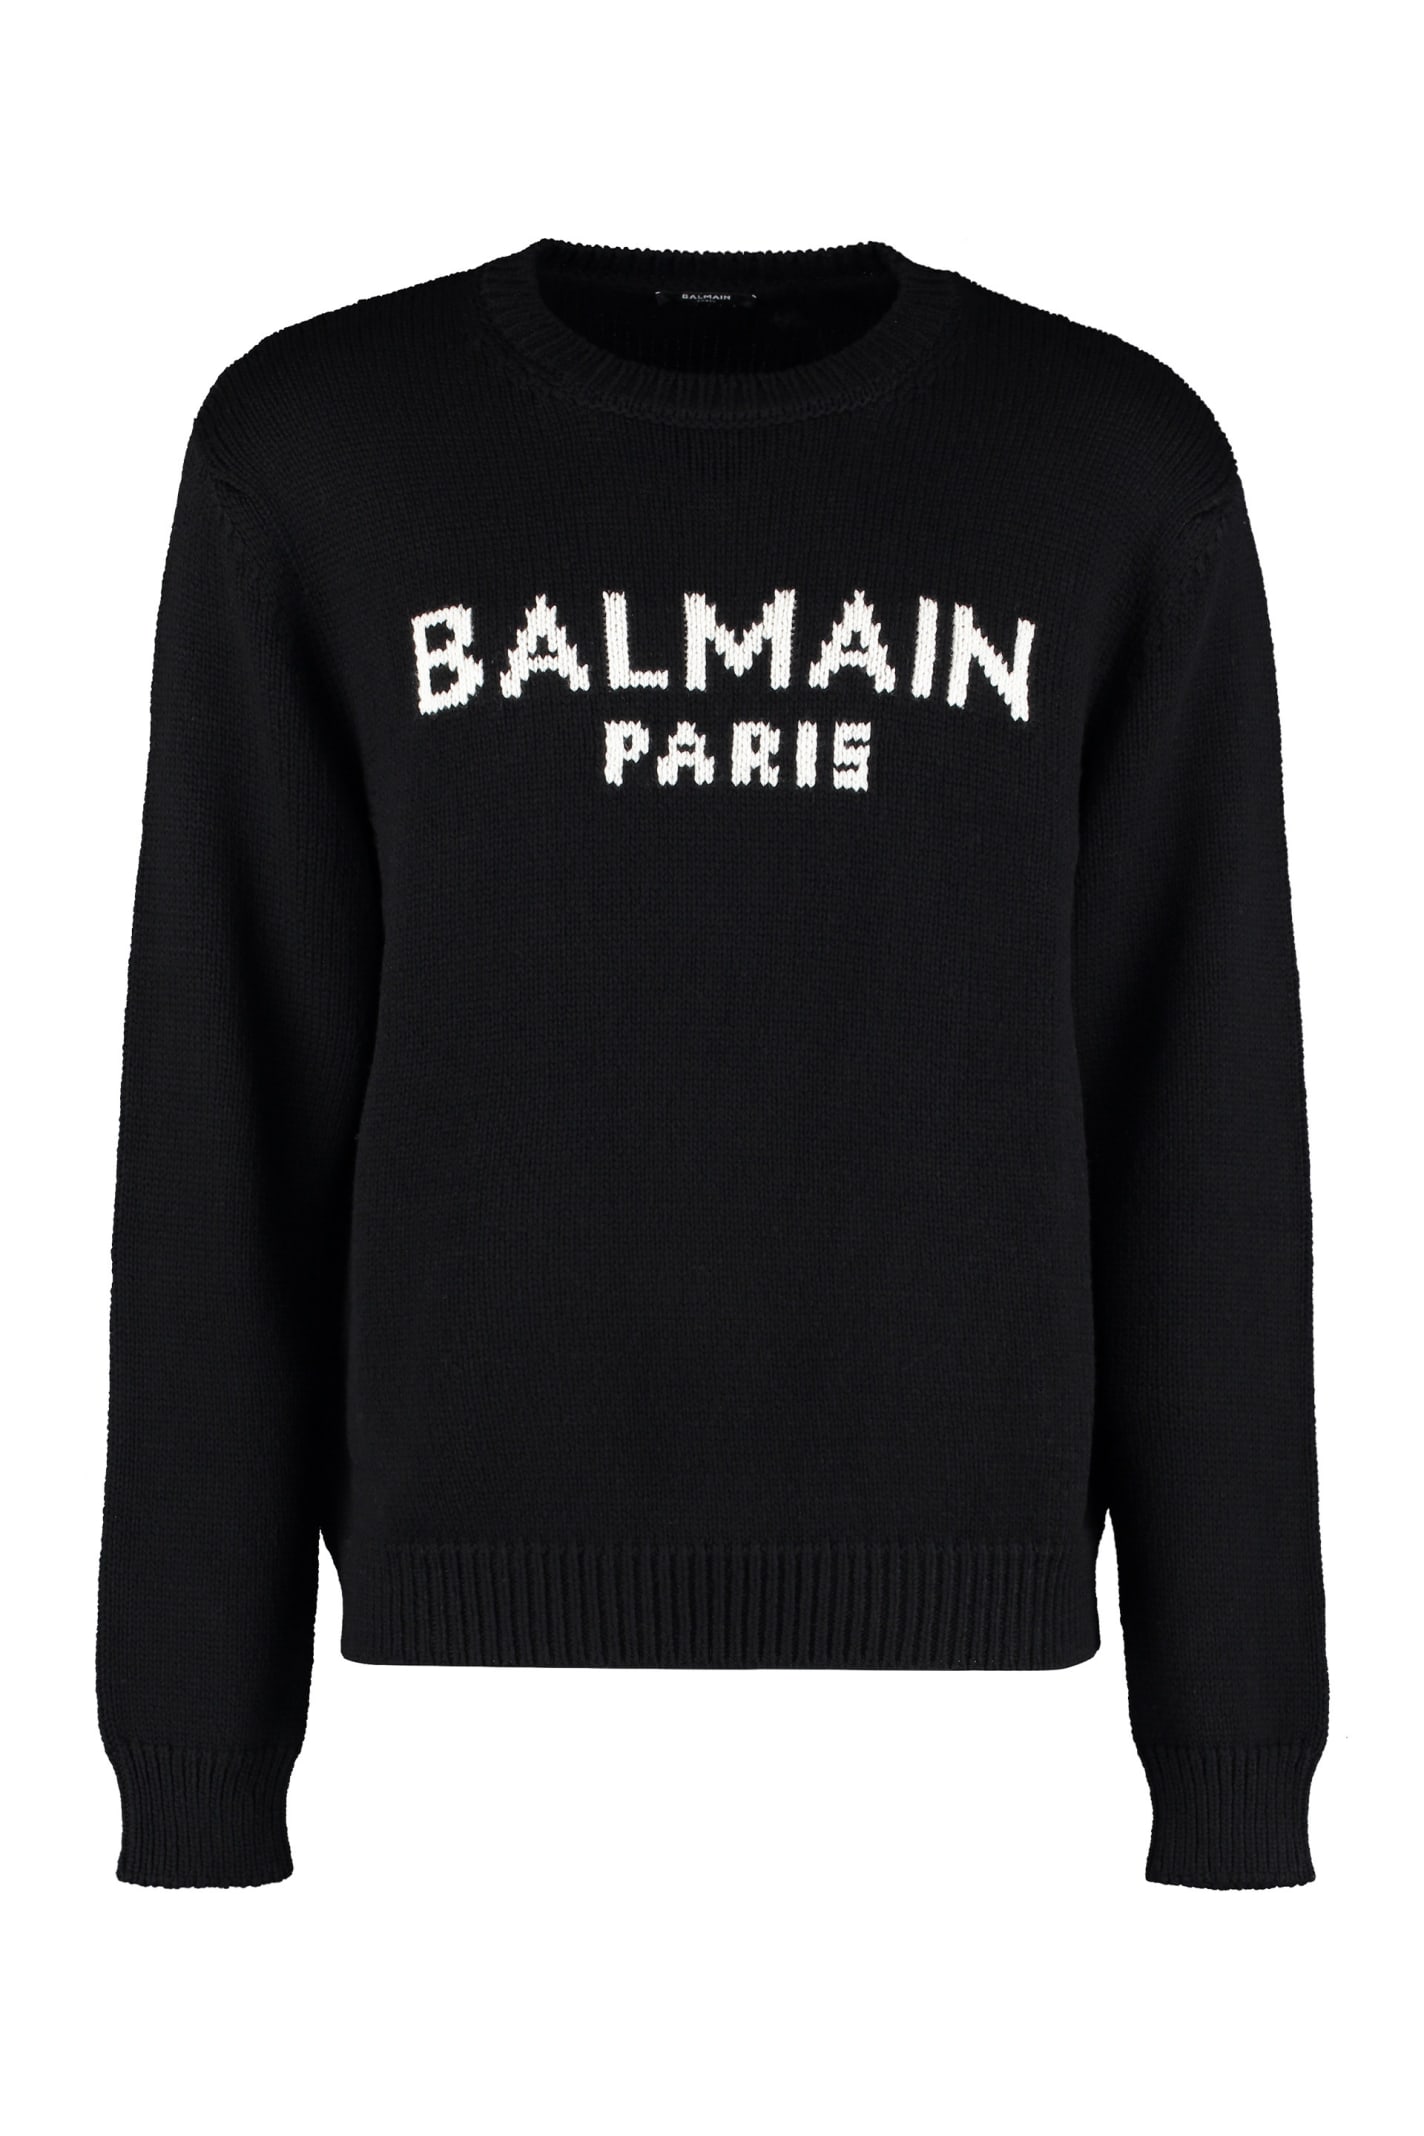 Balmain Ribbed Crew-neck Sweater